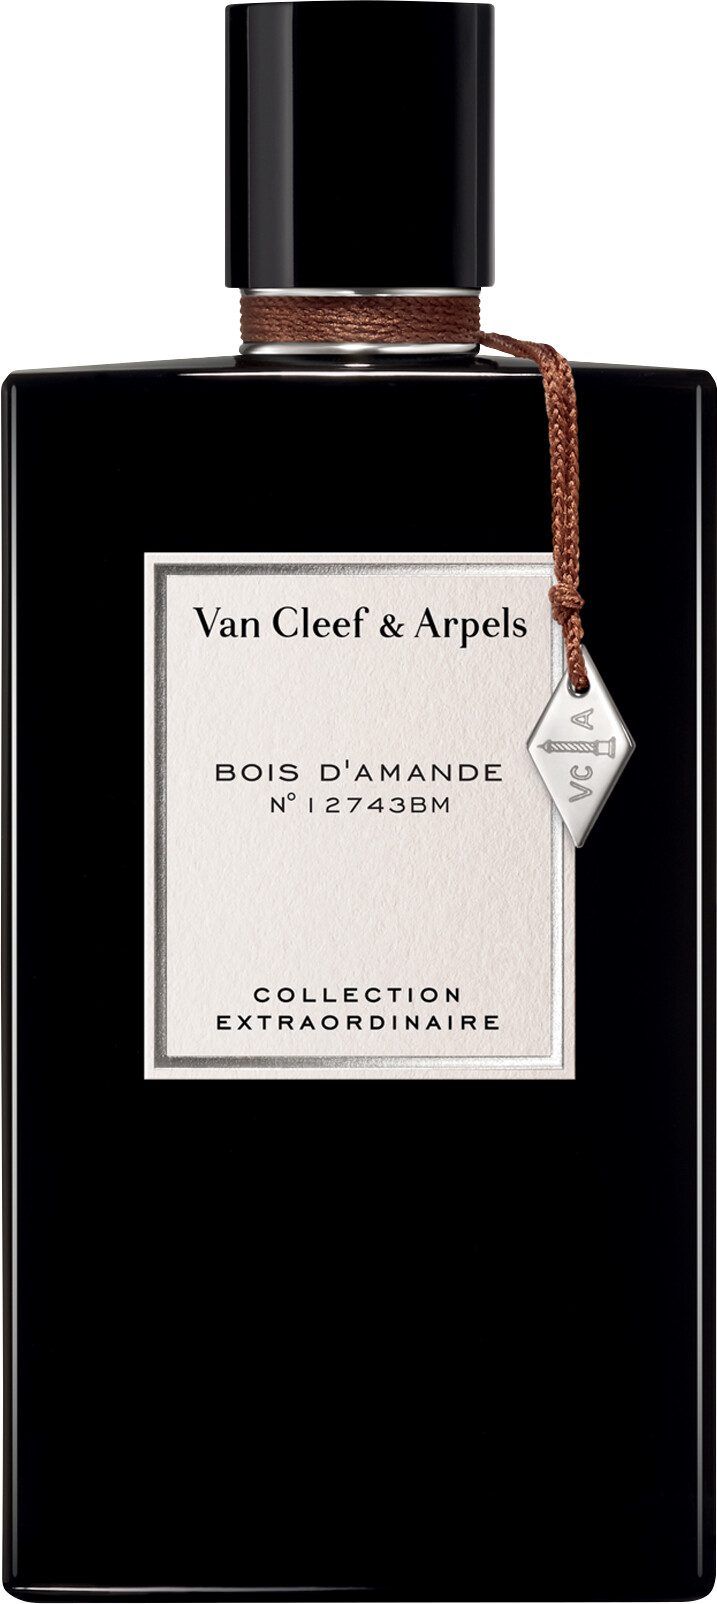 Van Cleef & Arpels Collection Extraordinaire Bois d'Amande Eau de Parfum Spray 75ml